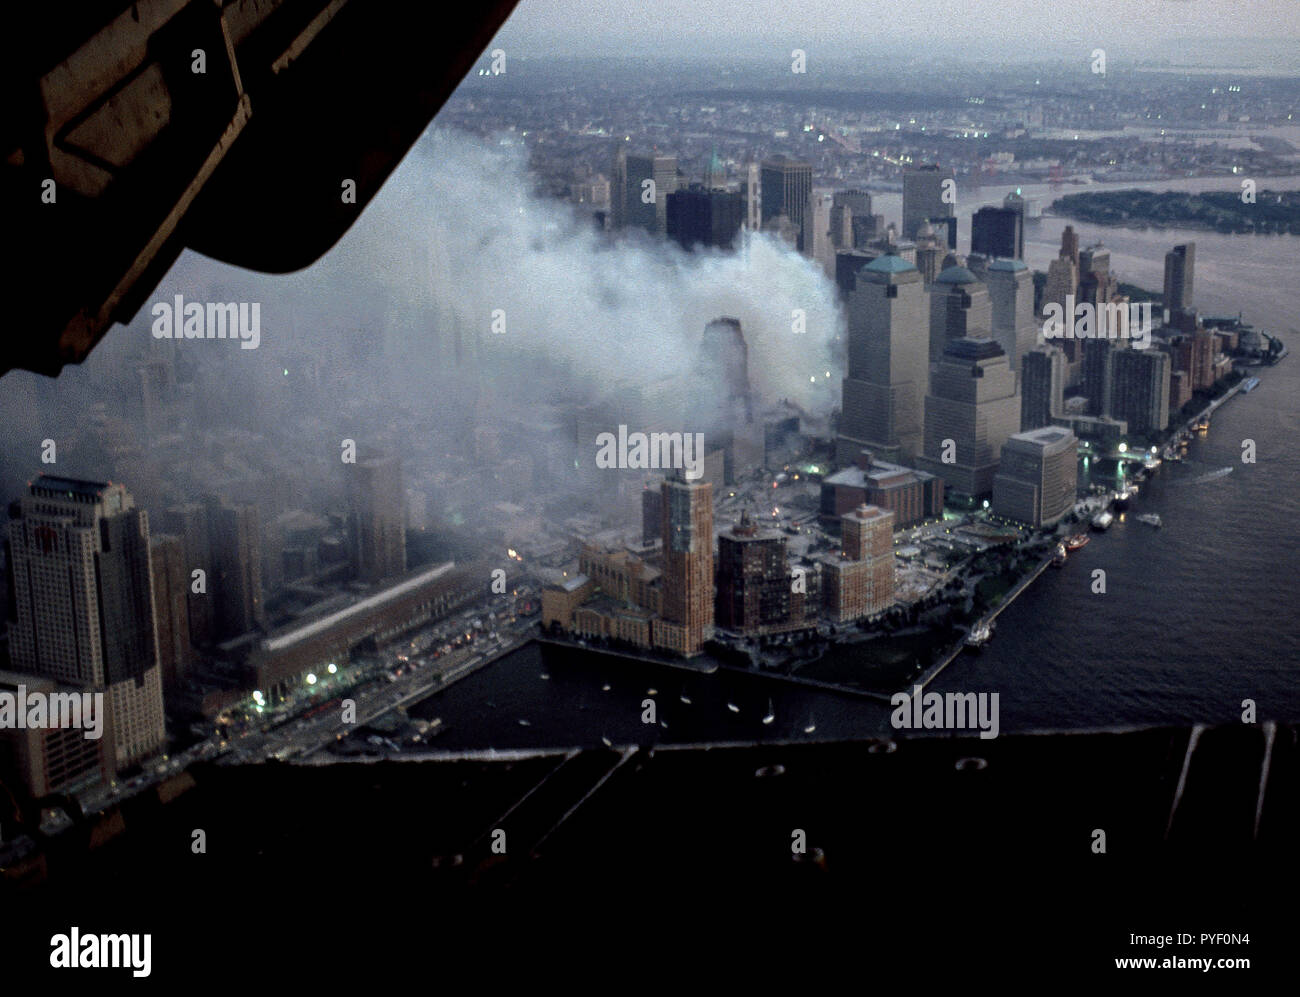 Settembre 13, 2001 - Antenne della covava World Trade Center, Ground Zero sito dopo il 9/11, 2001 attacchi terroristici. Foto di Gary Ell Foto Stock